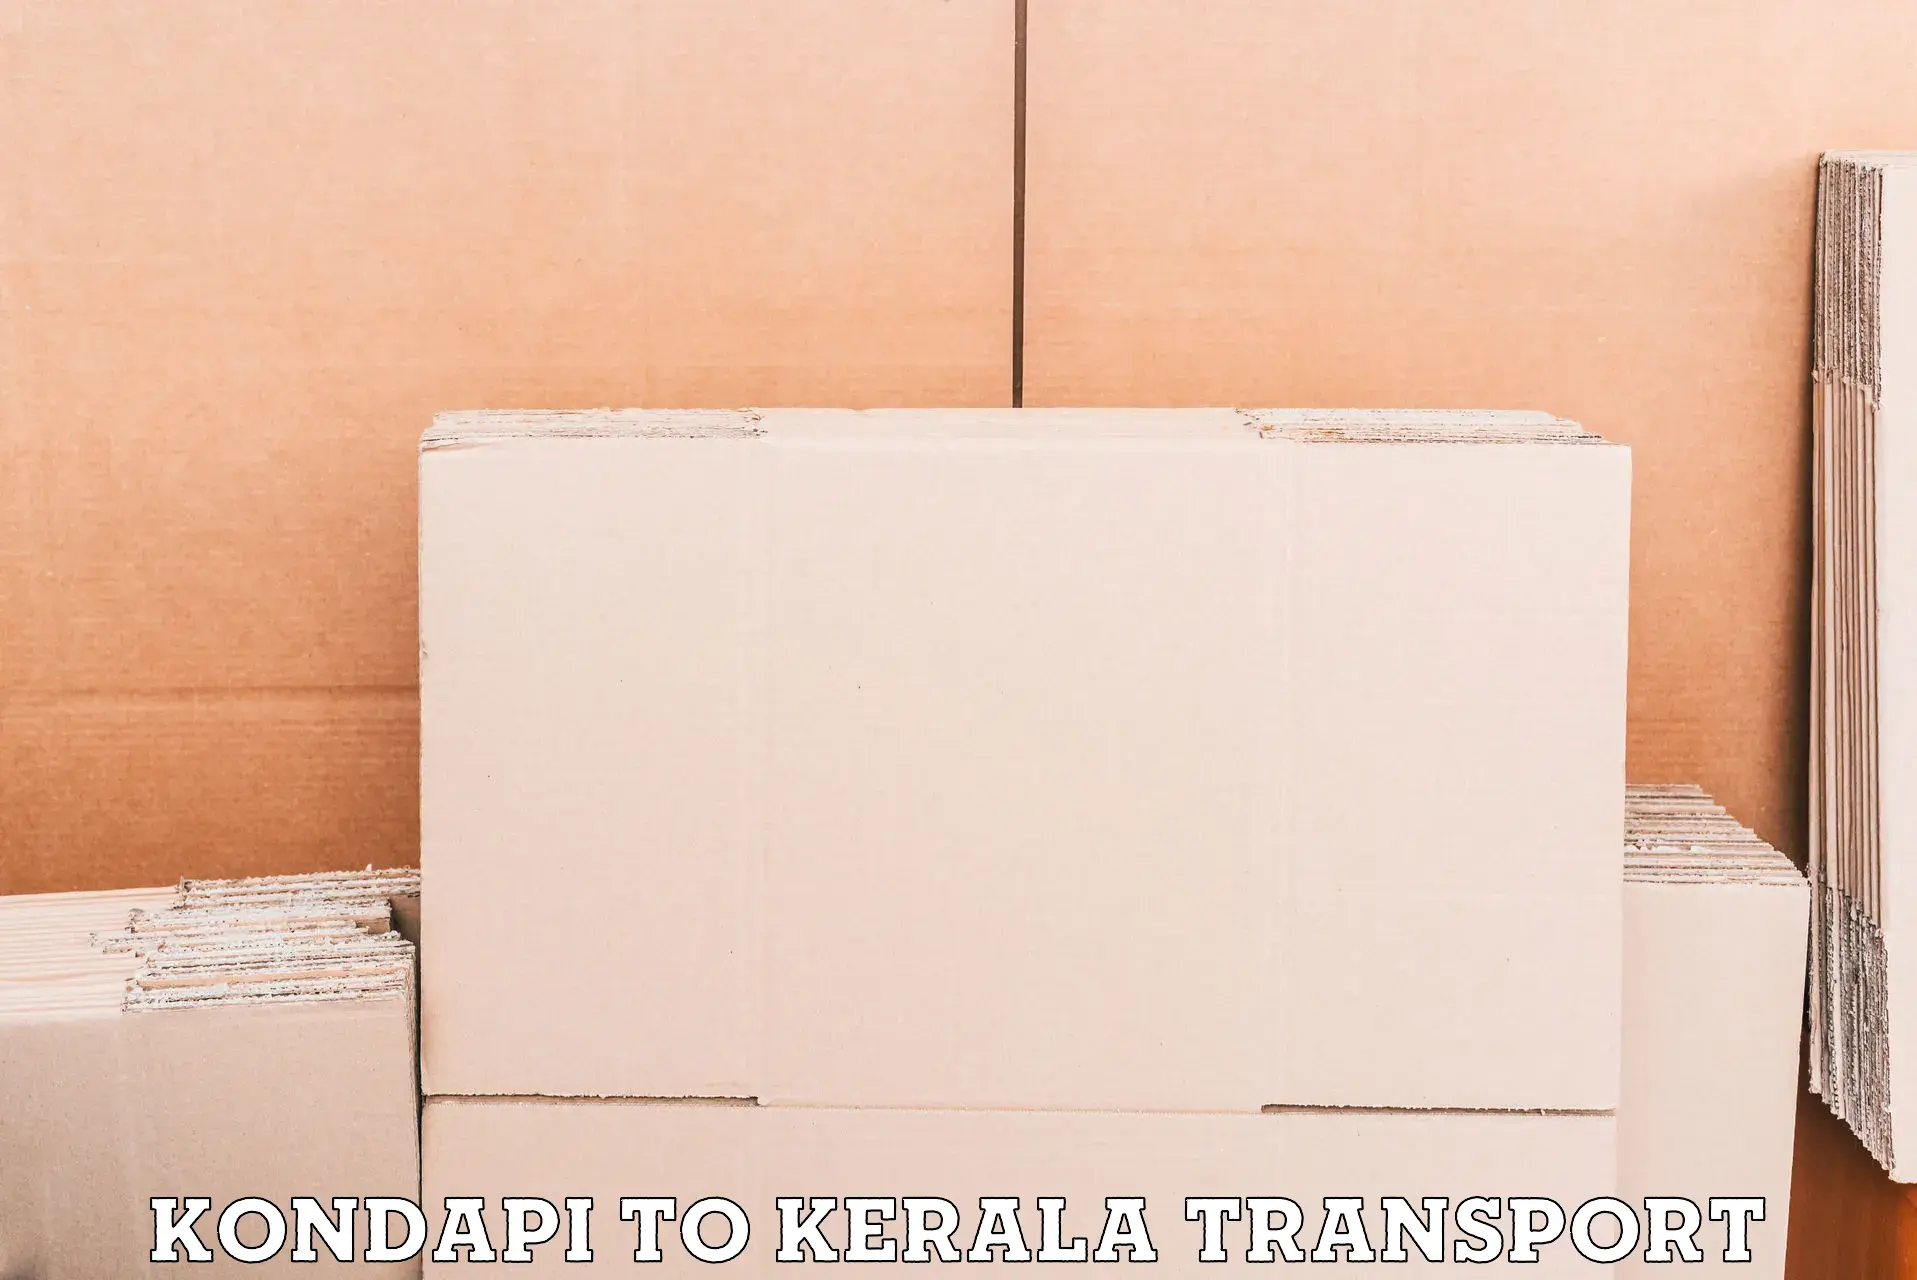 Nearby transport service Kondapi to Calicut